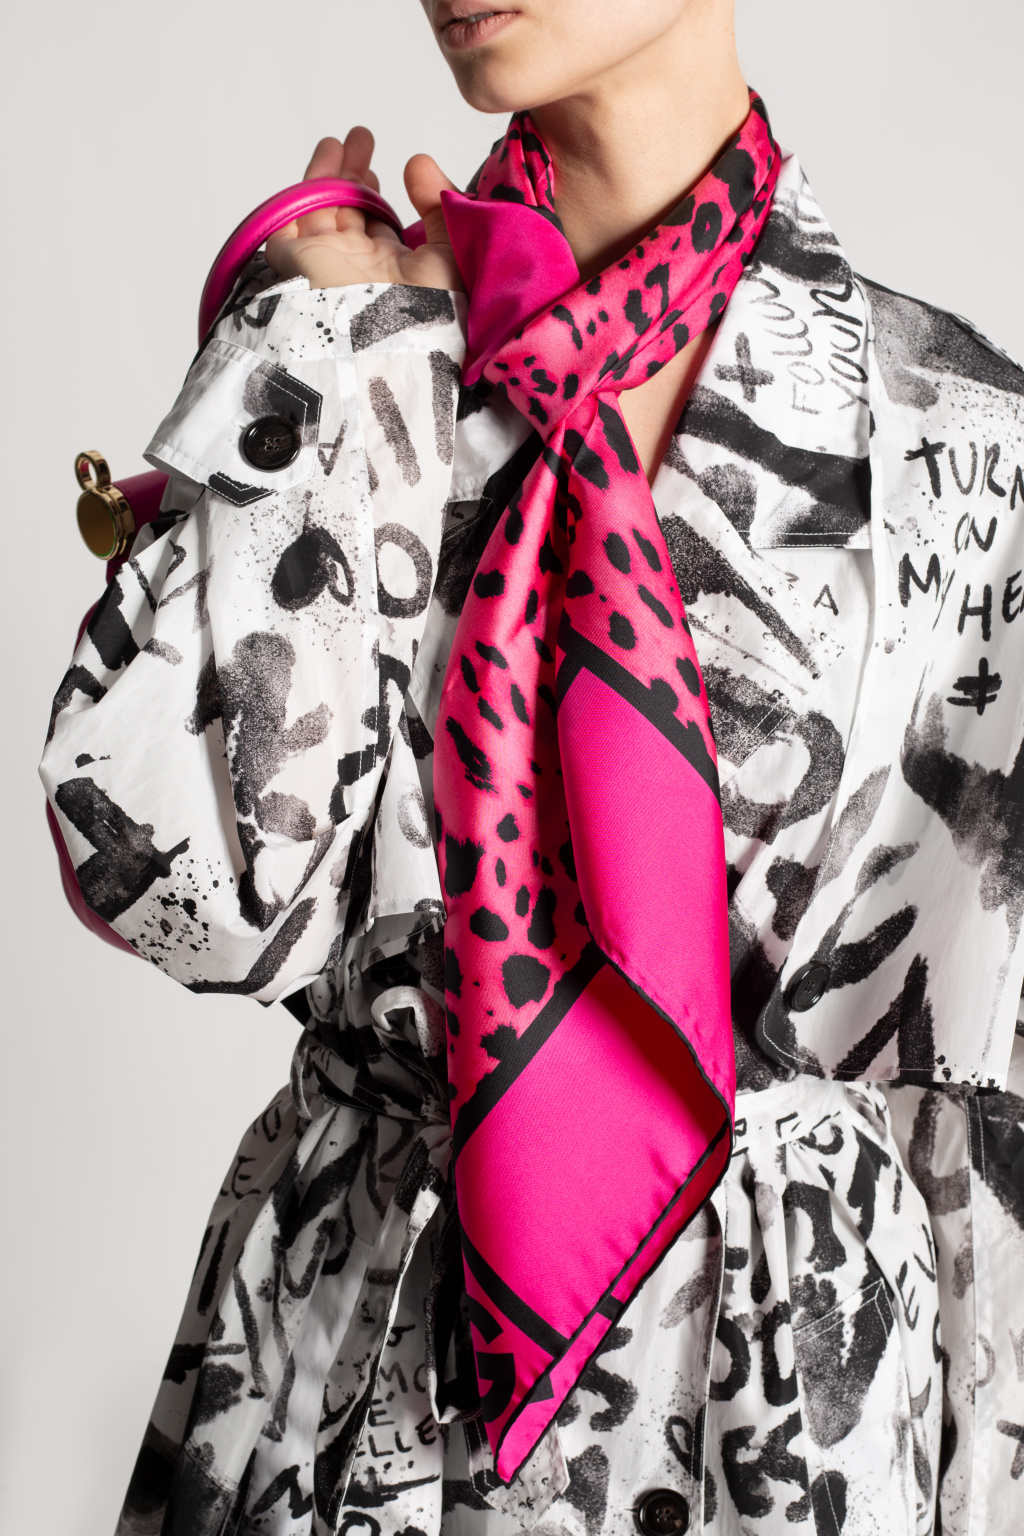 dolce KURTKA & Gabbana Silk scarf